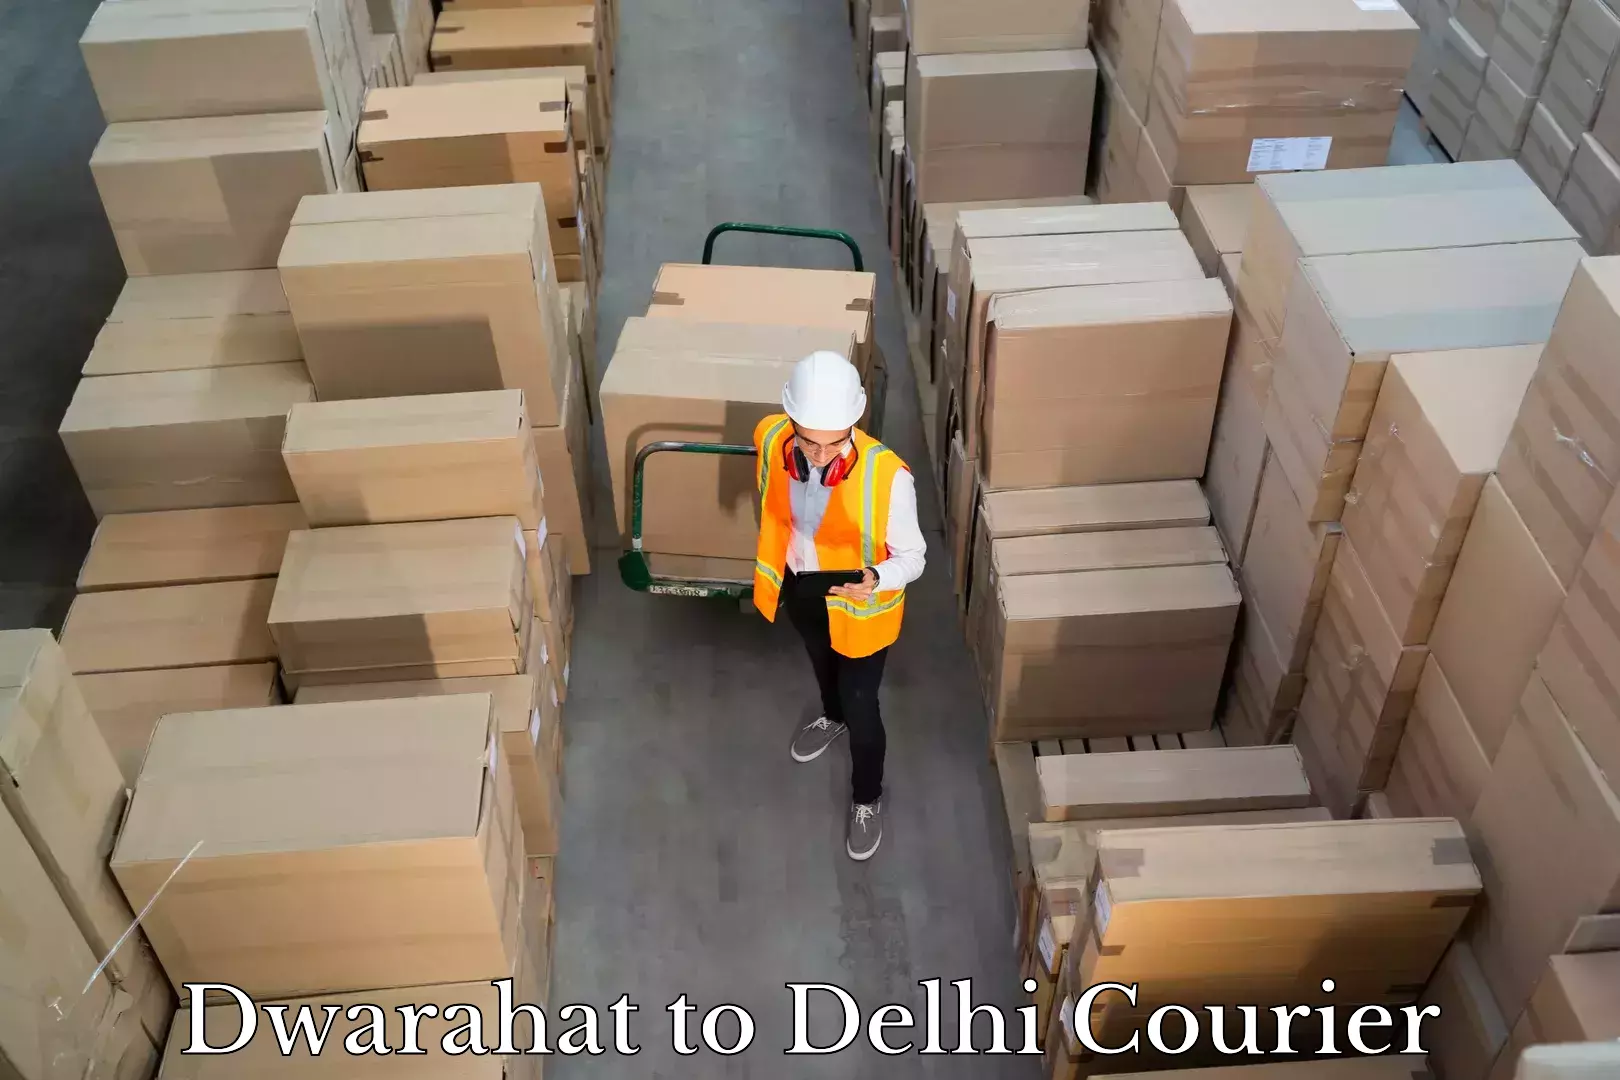 Baggage transport network Dwarahat to Delhi Technological University DTU